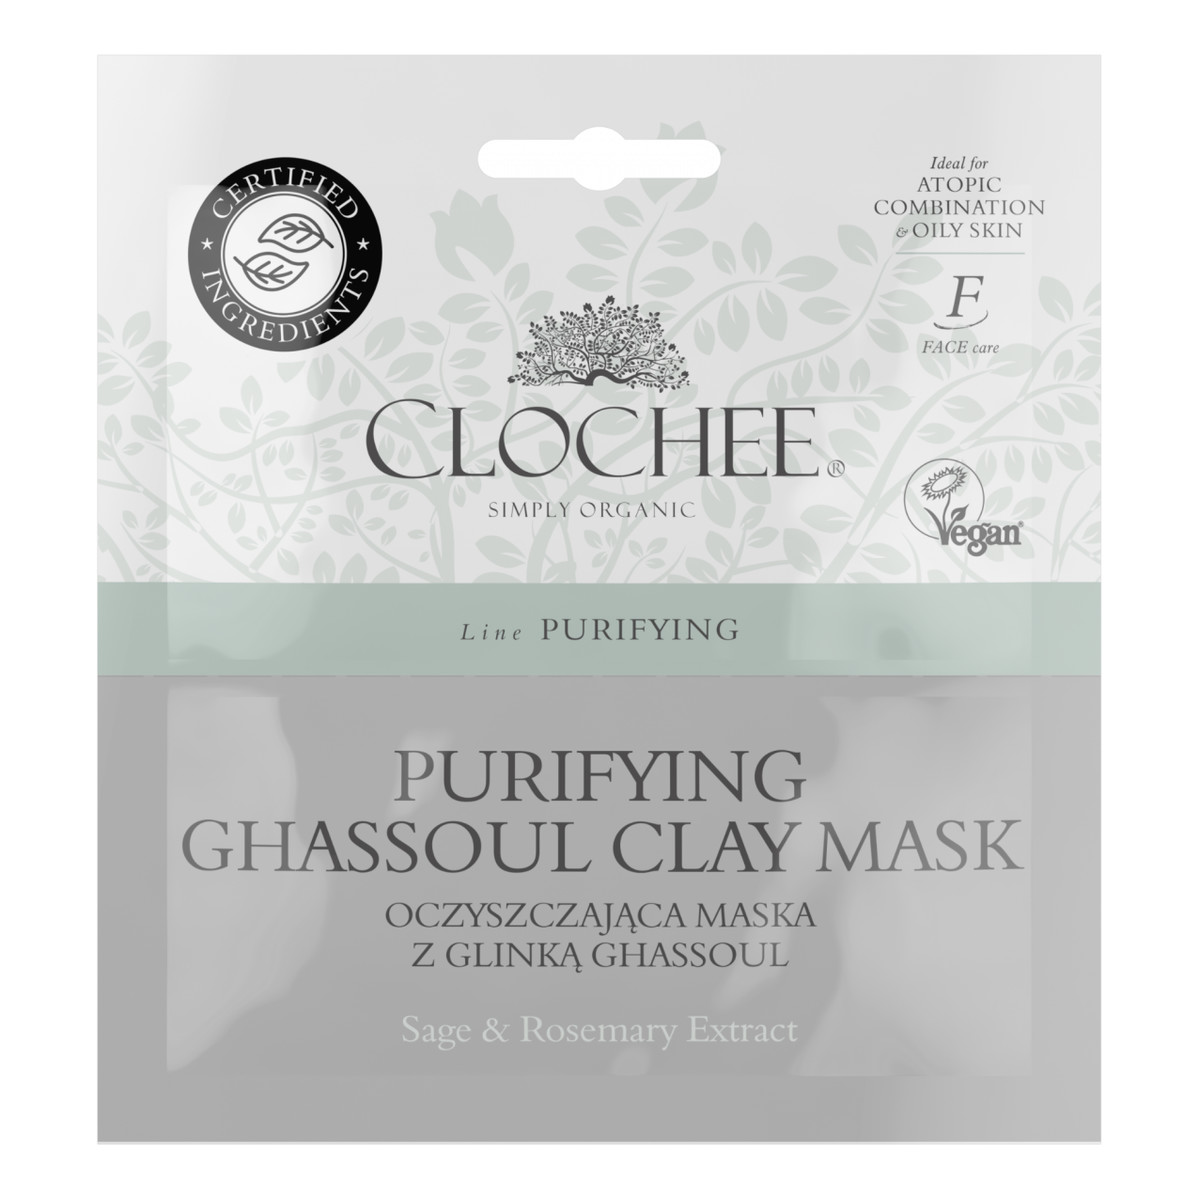 Clochee Oczyszczająca Maska Z Glinką Ghassoul 2x6ml 12ml